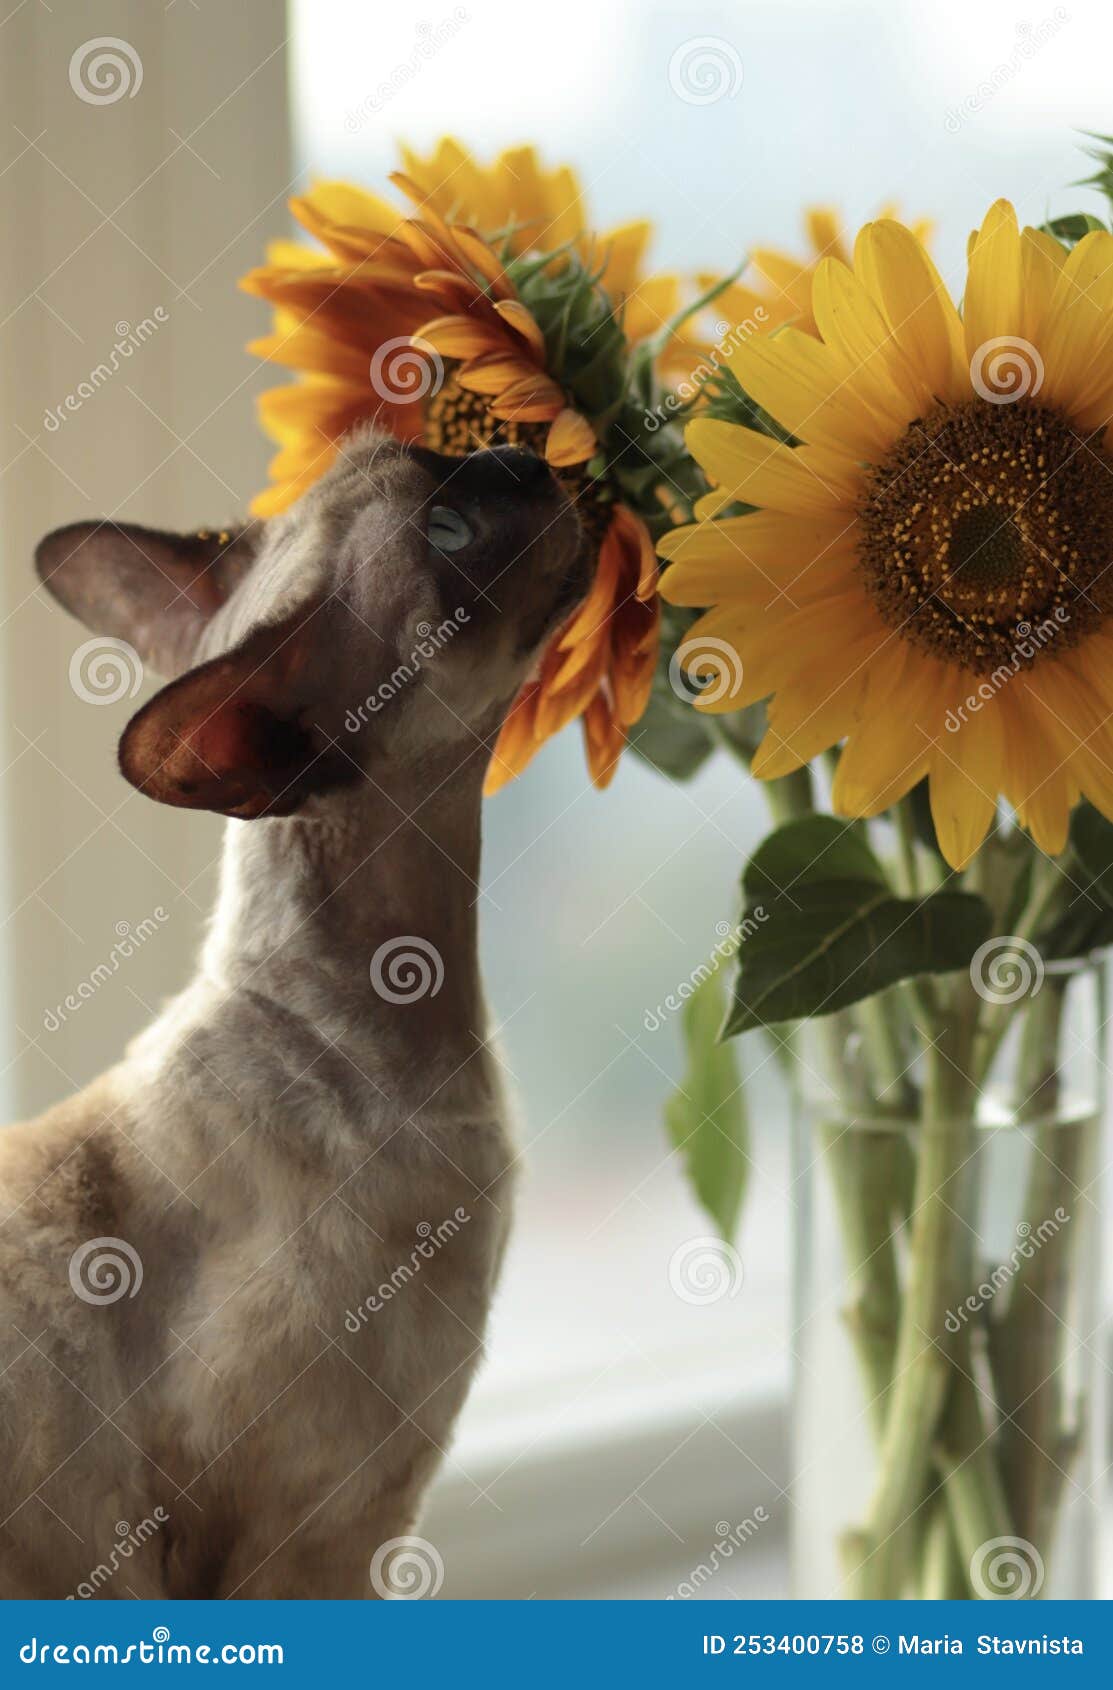 戴着向日葵花圈和太阳镜的猫的插图 库存图片. 图片 包括有 向日葵, 草图, 生产, 太阳镜, 晒裂, 宠物 - 289535171